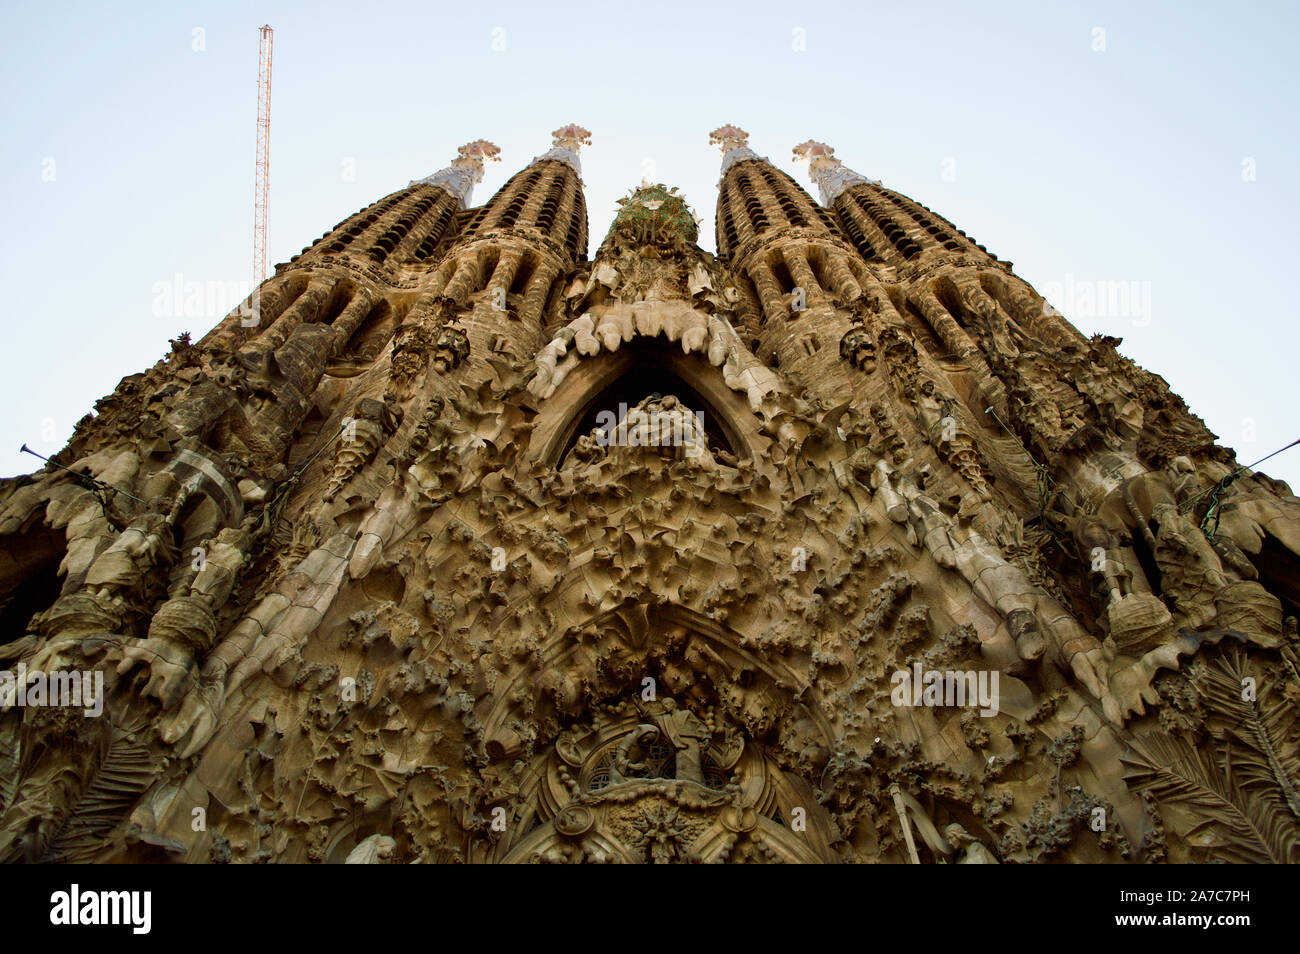 The Charity portal of the Nativity facade of La Sagrada Familia in ...